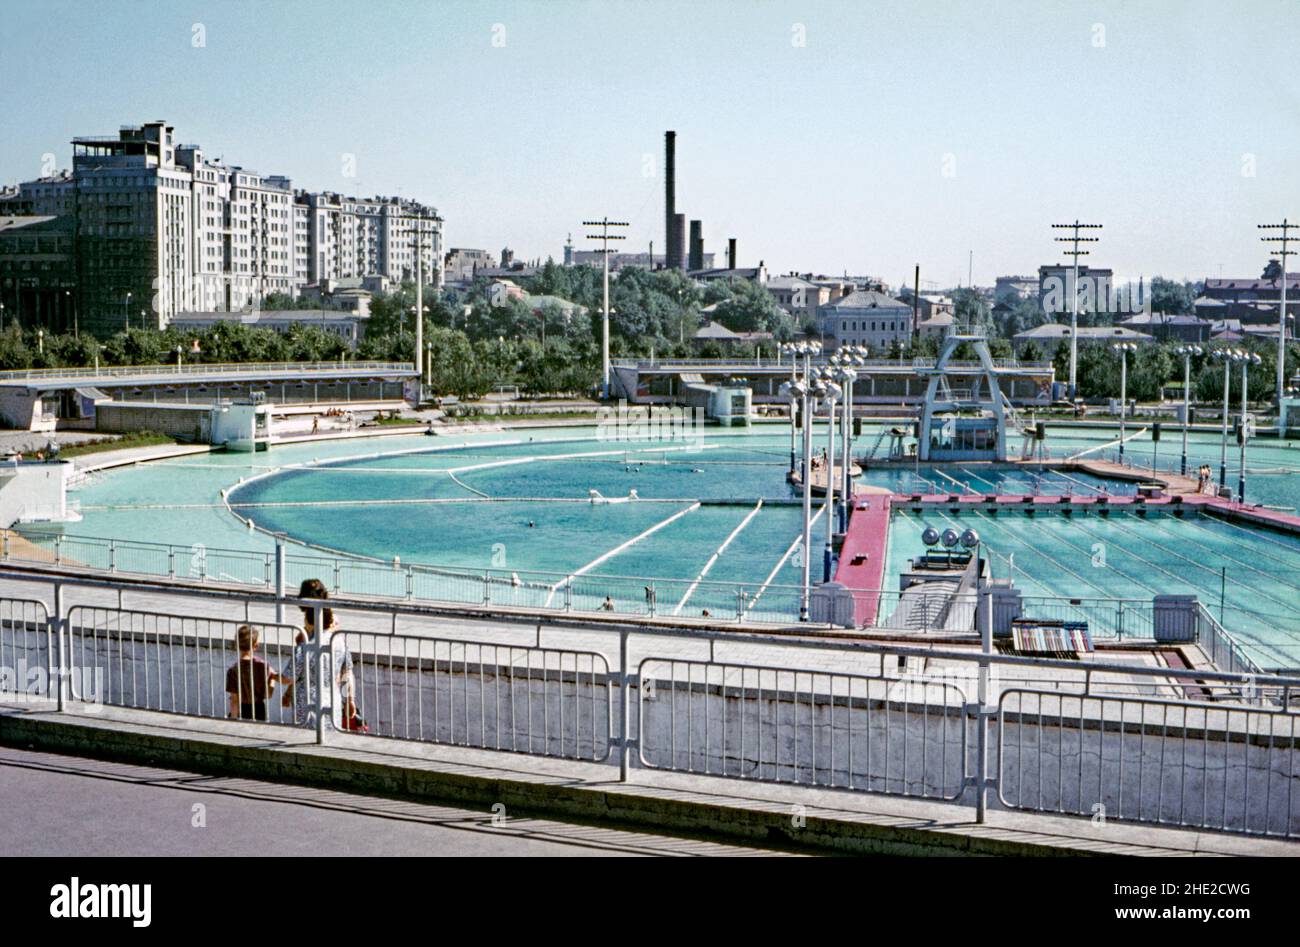 Der Moskwa-Pool (Moskauer Pool), Moskau, Russland Mitte 1960s. Der kreisförmige, betonierte Freiluft-Badekomplex oder lido war eine Zeit lang der größte der Welt. Es wurde 1958 in Moskau auf dem Fundament des noch nicht erbauten Sowjetpalastes errichtet. Der beheizte Pool wird das ganze Jahr über betrieben, auch bei Temperaturen von bis zu -20 Grad Im Winter wurde das Wasser auf 32-34 Grad erhitzt Der Bereich des Schwimmbads wurde in Abschnitte für freies Schwimmen und Sport unterteilt, sowie ein achtspuriges Becken und eine 10 m hohe Sprungplattform. Es schloss 1994 – ein Vintage-Foto aus dem Jahr 1960s. Stockfoto